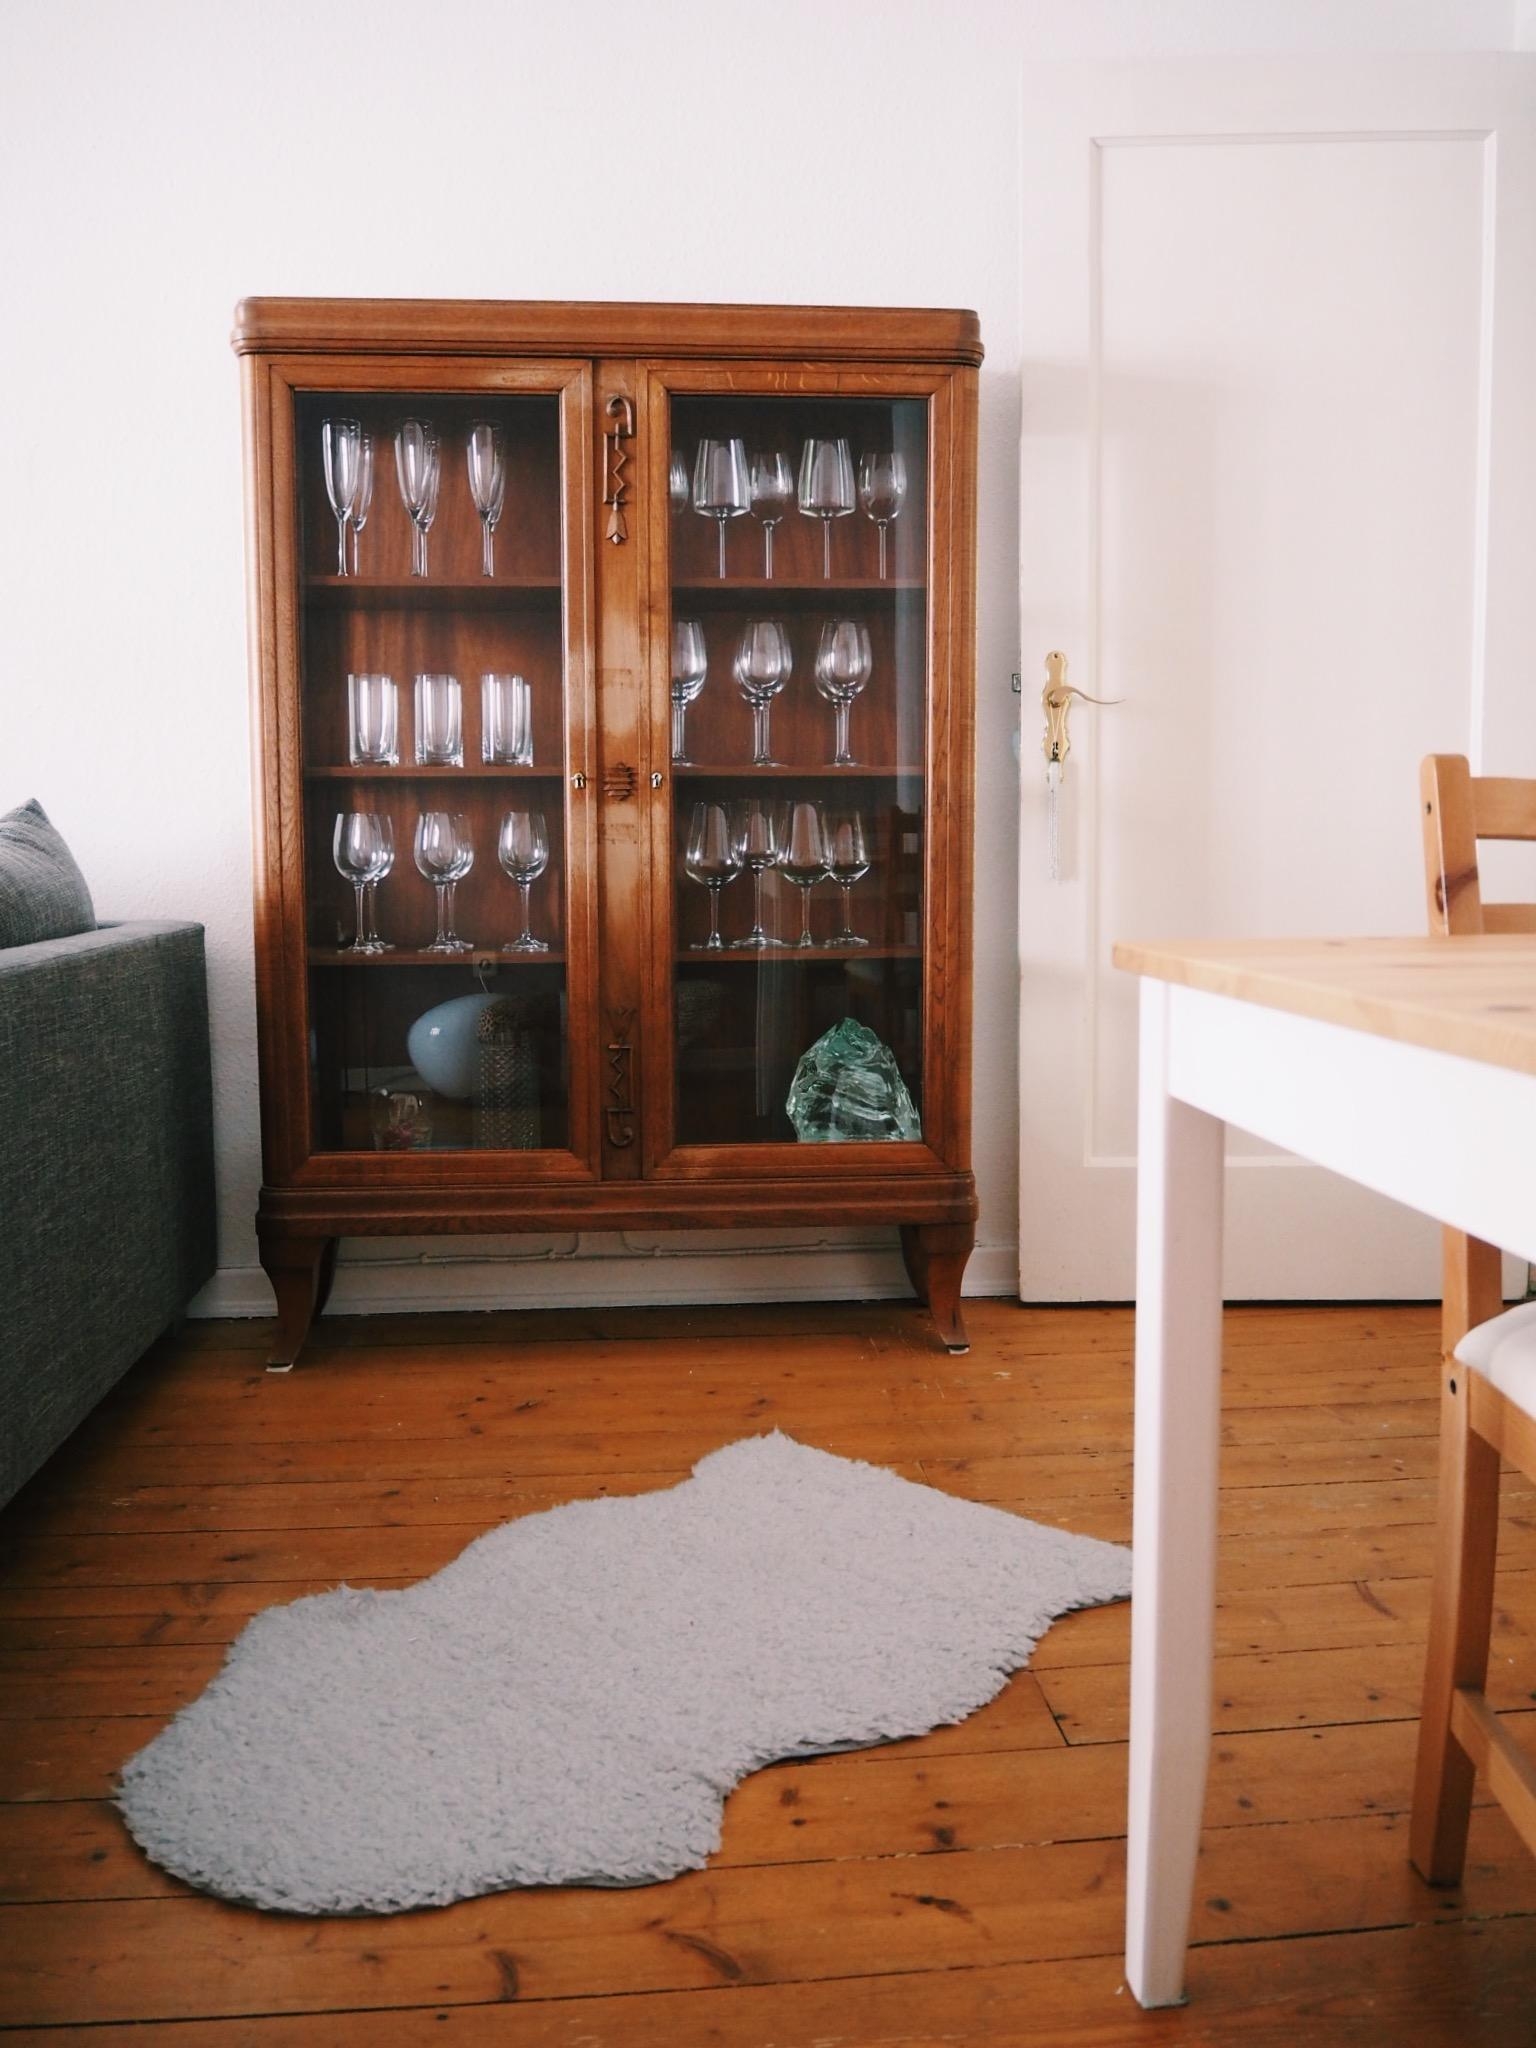 Neuer Lieblings-Mitbewohner 😍 ich freue mich immer noch jedes Mal, wenn ich ins #wohnzimmer schaue 😉 #vitrine #antik 